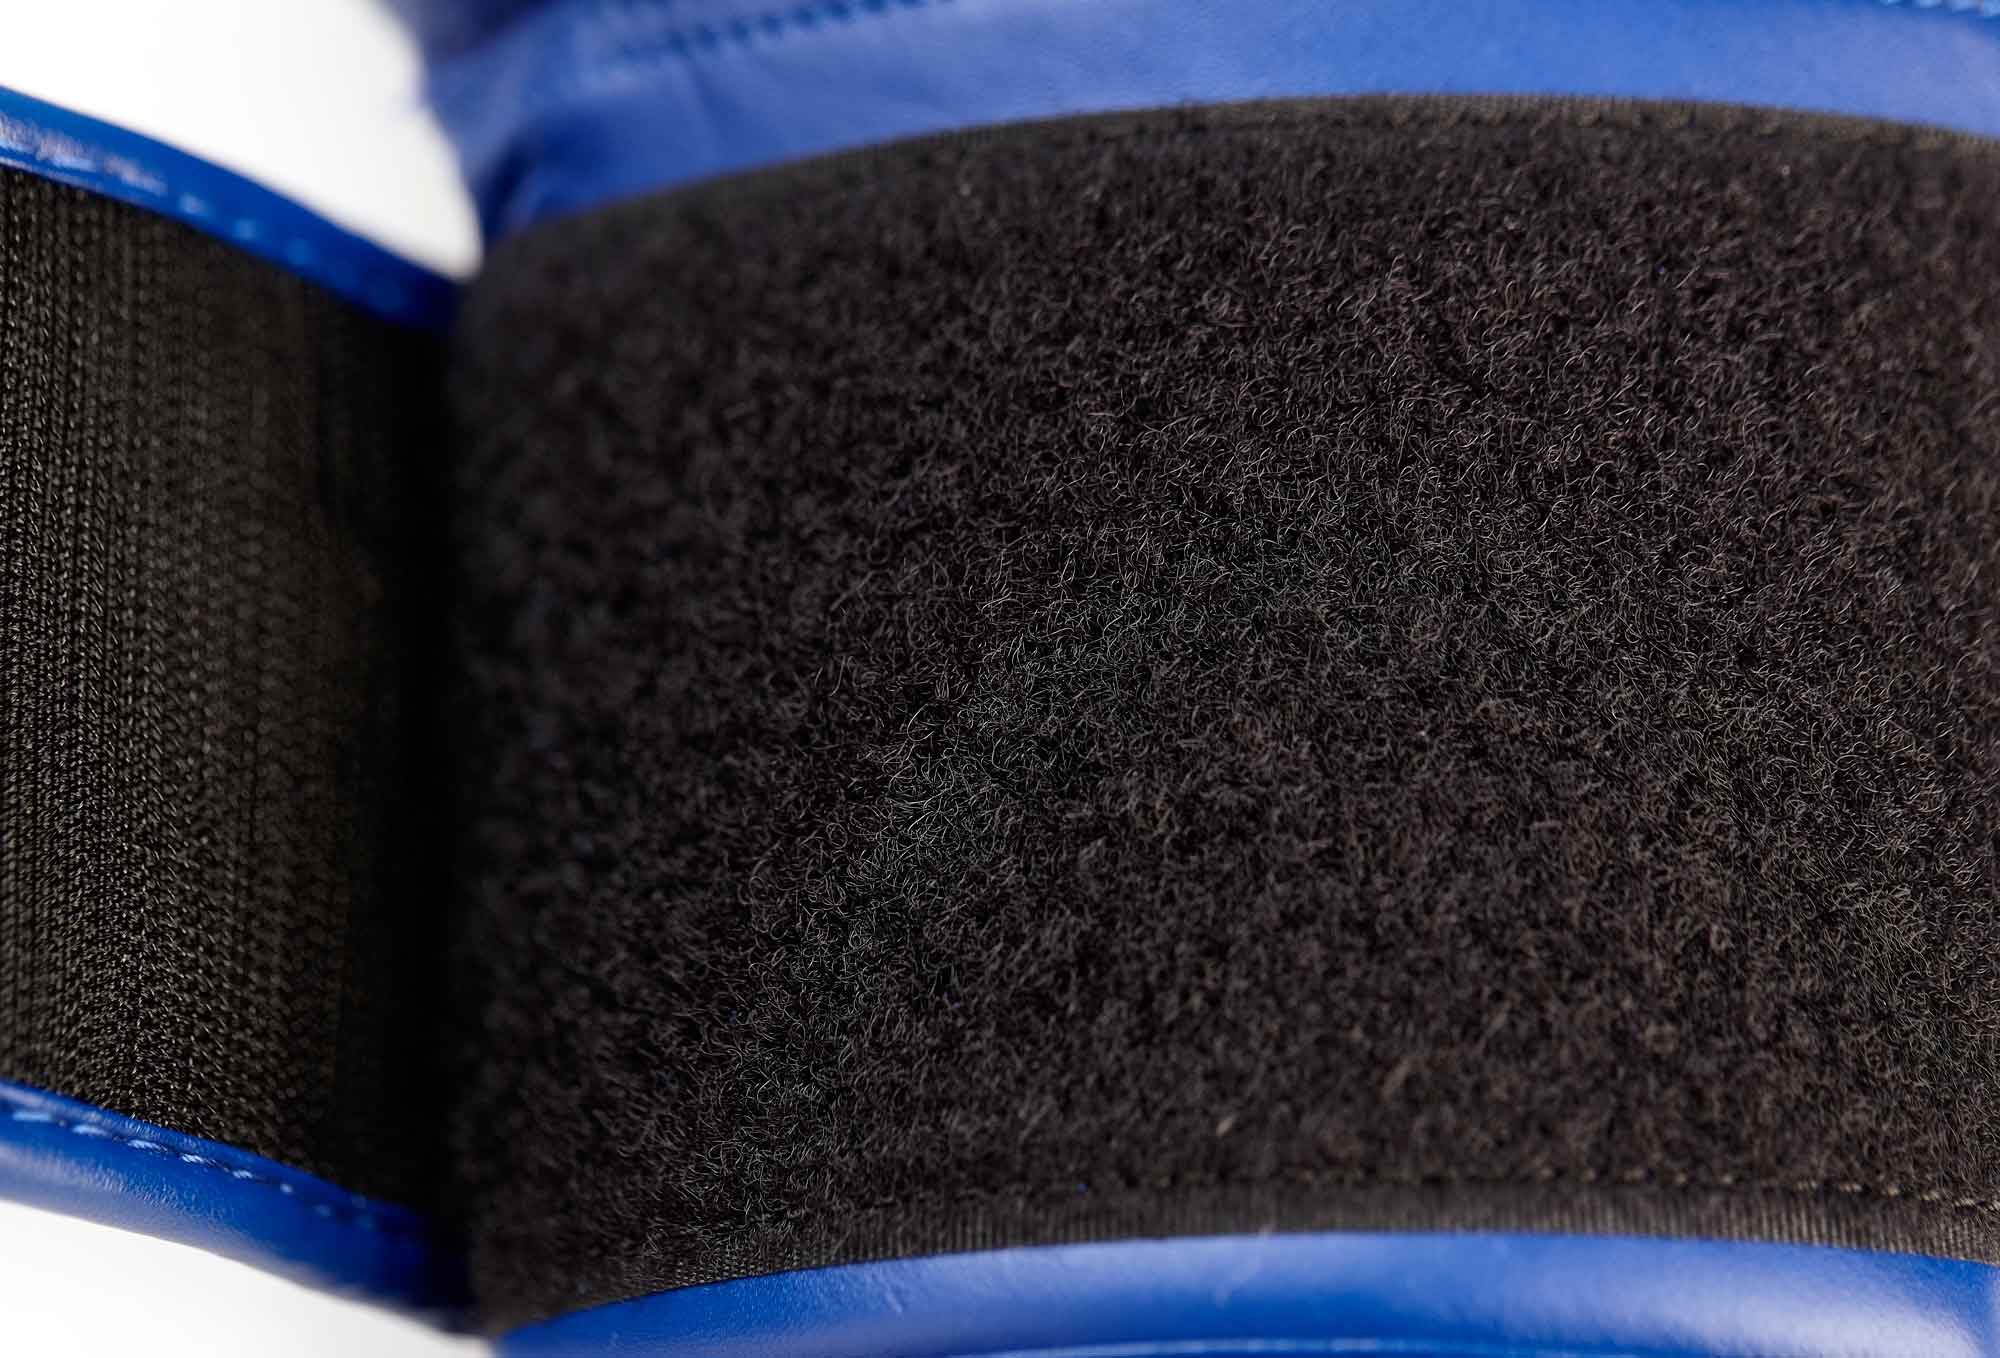 adidas Amateur Boxing Gloves Leather - blue, ADIWAKOG1